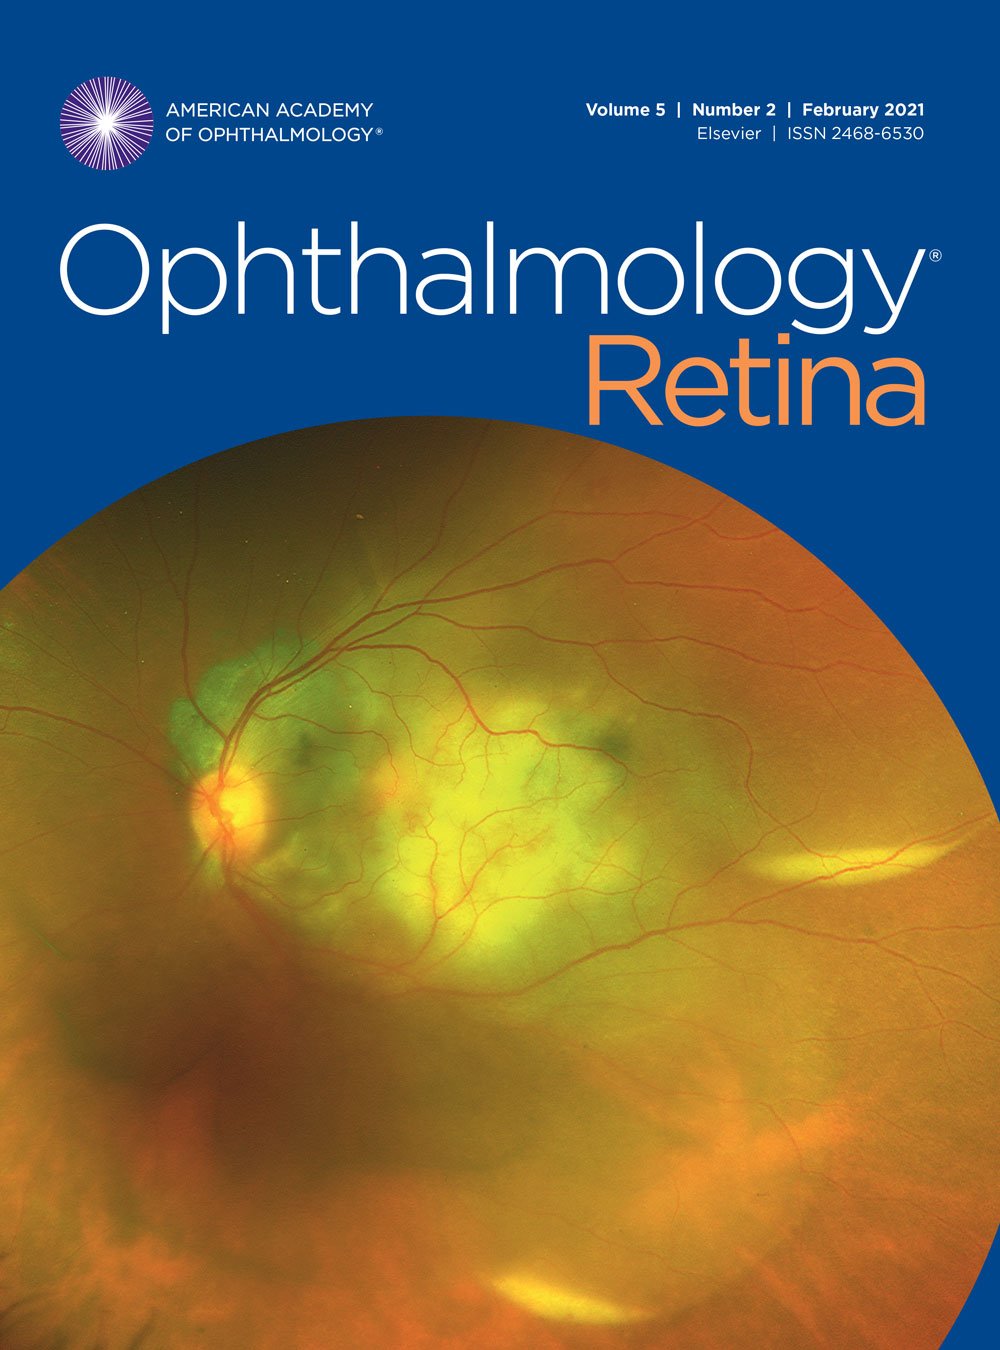 Ophthalmology Retina February 2021, Volume 5 Issue 2 image